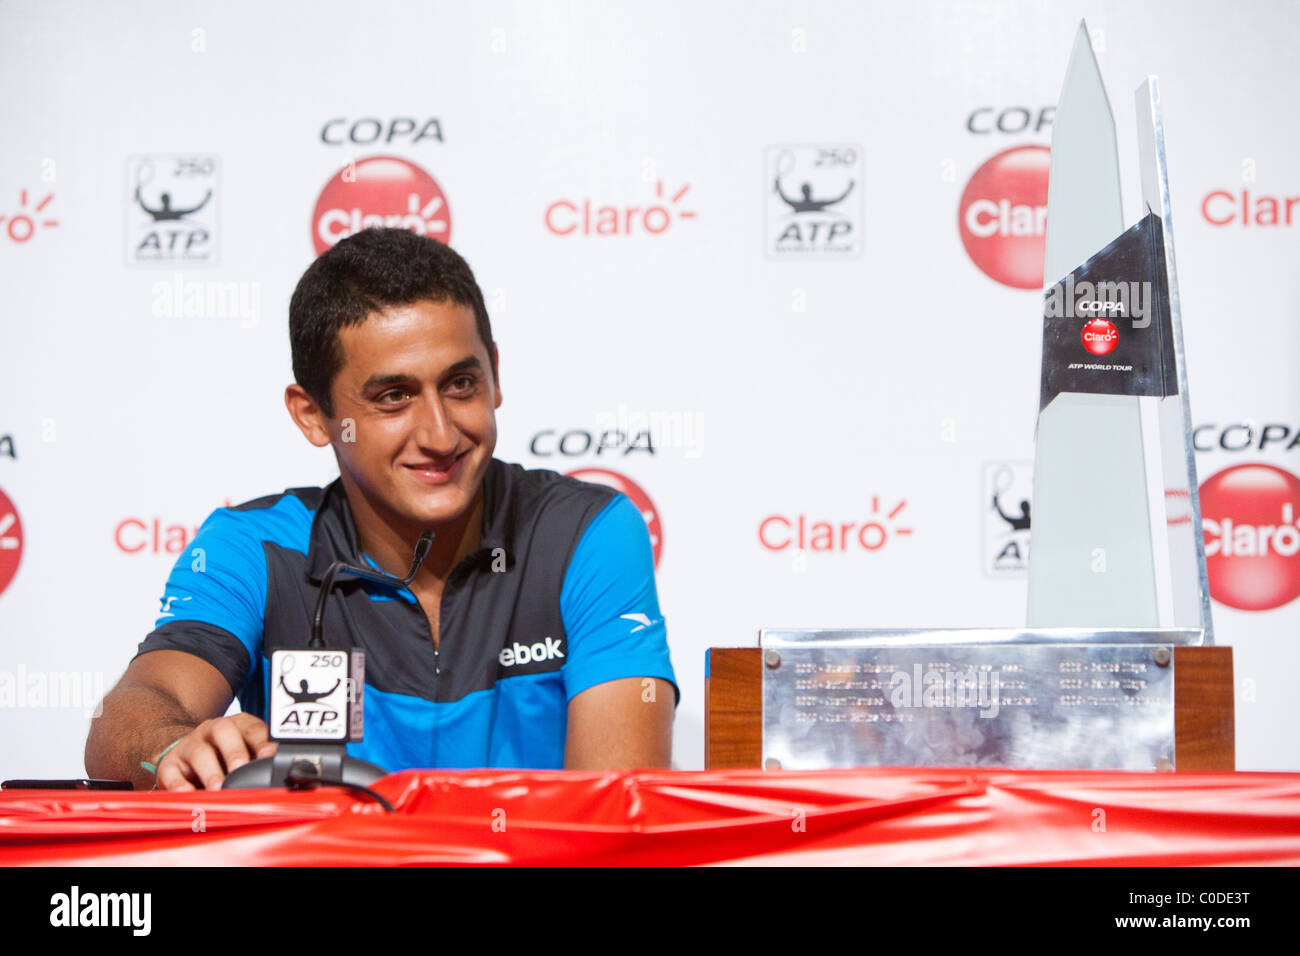 Joueur de tennis espagnol Nicolas Almagro sourit au cours de la conférence de presse après avoir remporté l'ATP Buenos Aires - Copa Claro 2011 Banque D'Images